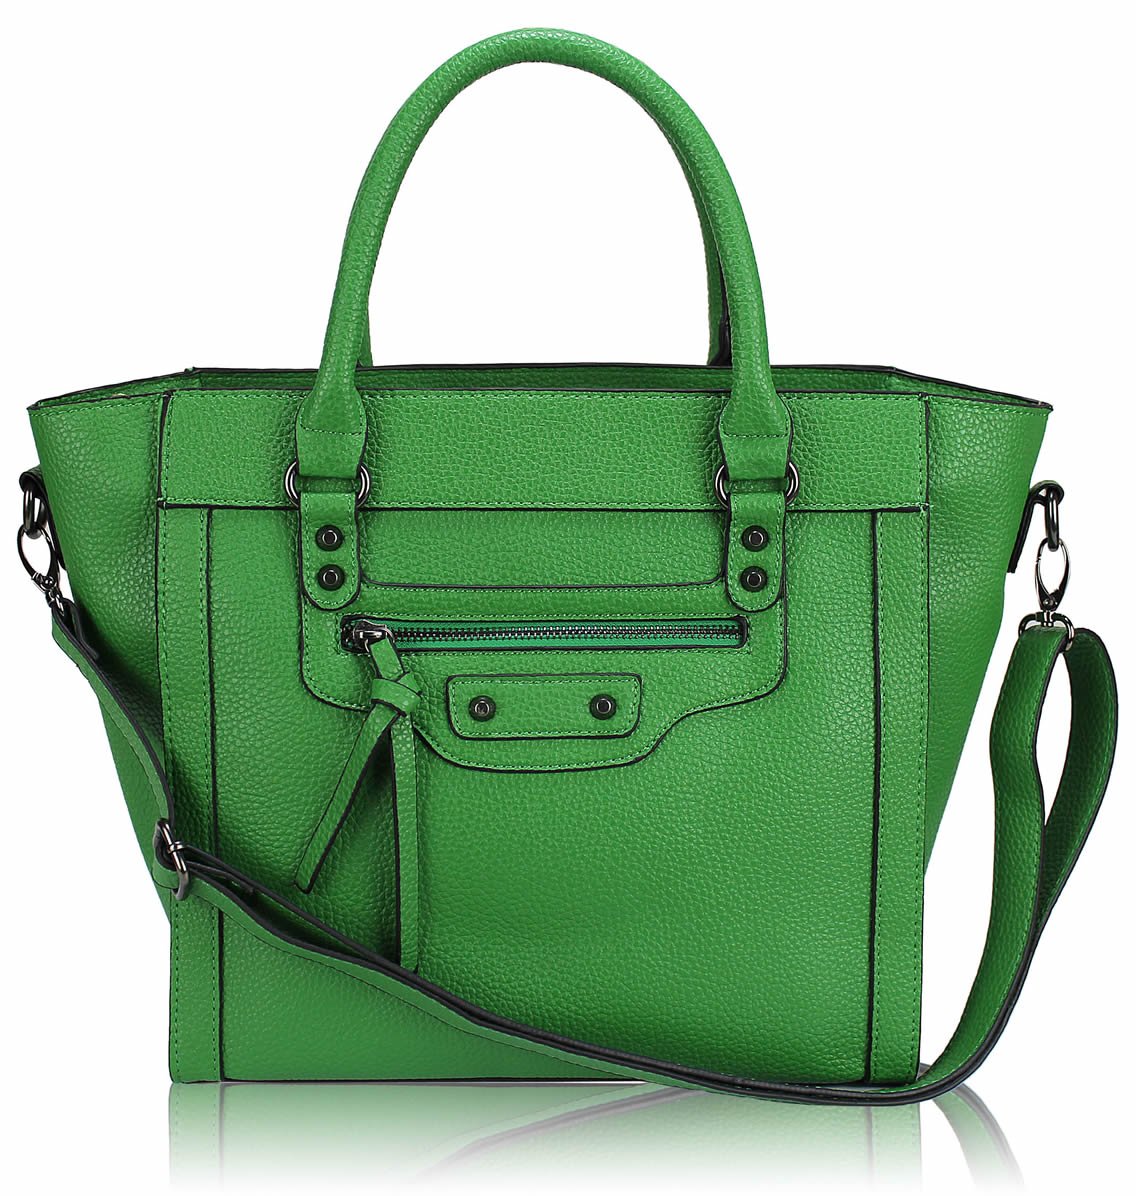 Wholesale Green Tote Handbag With Long Strap